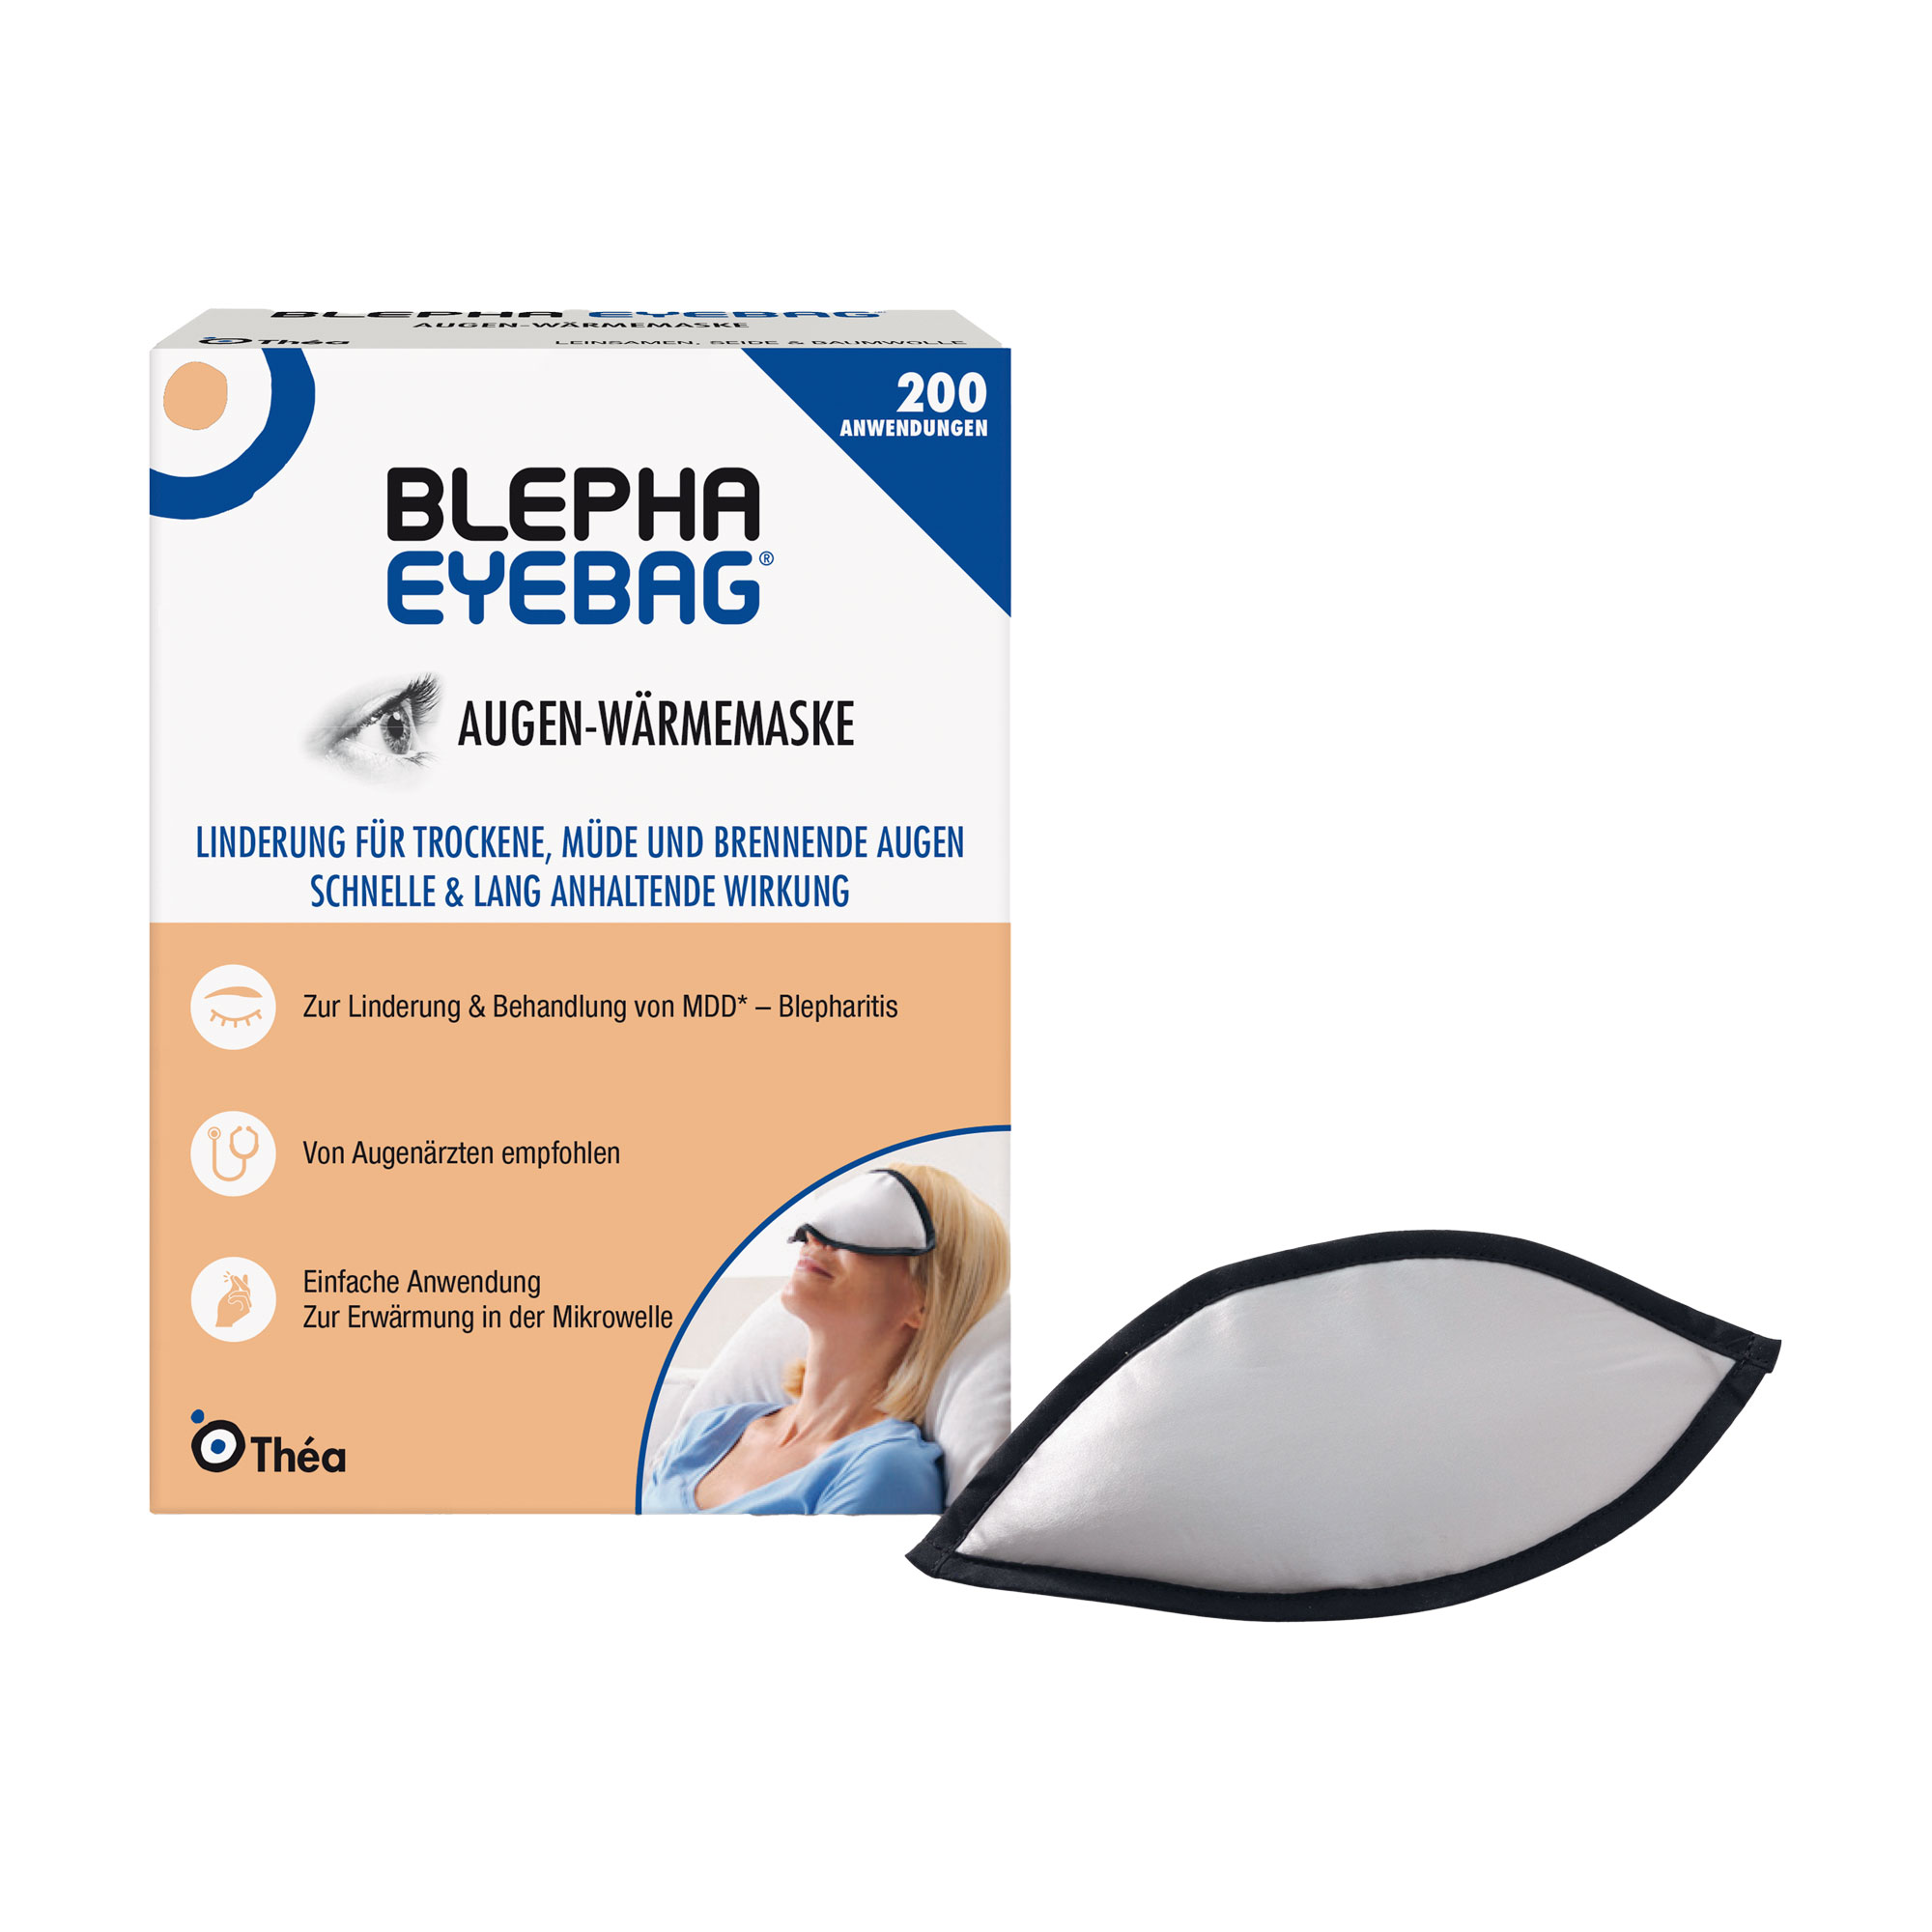 Zur Behandlung von Meibom-Drüsen-Dysfunktion, Blepharitis und zur Linderung von trockenen, müden oder brennenden Augen.